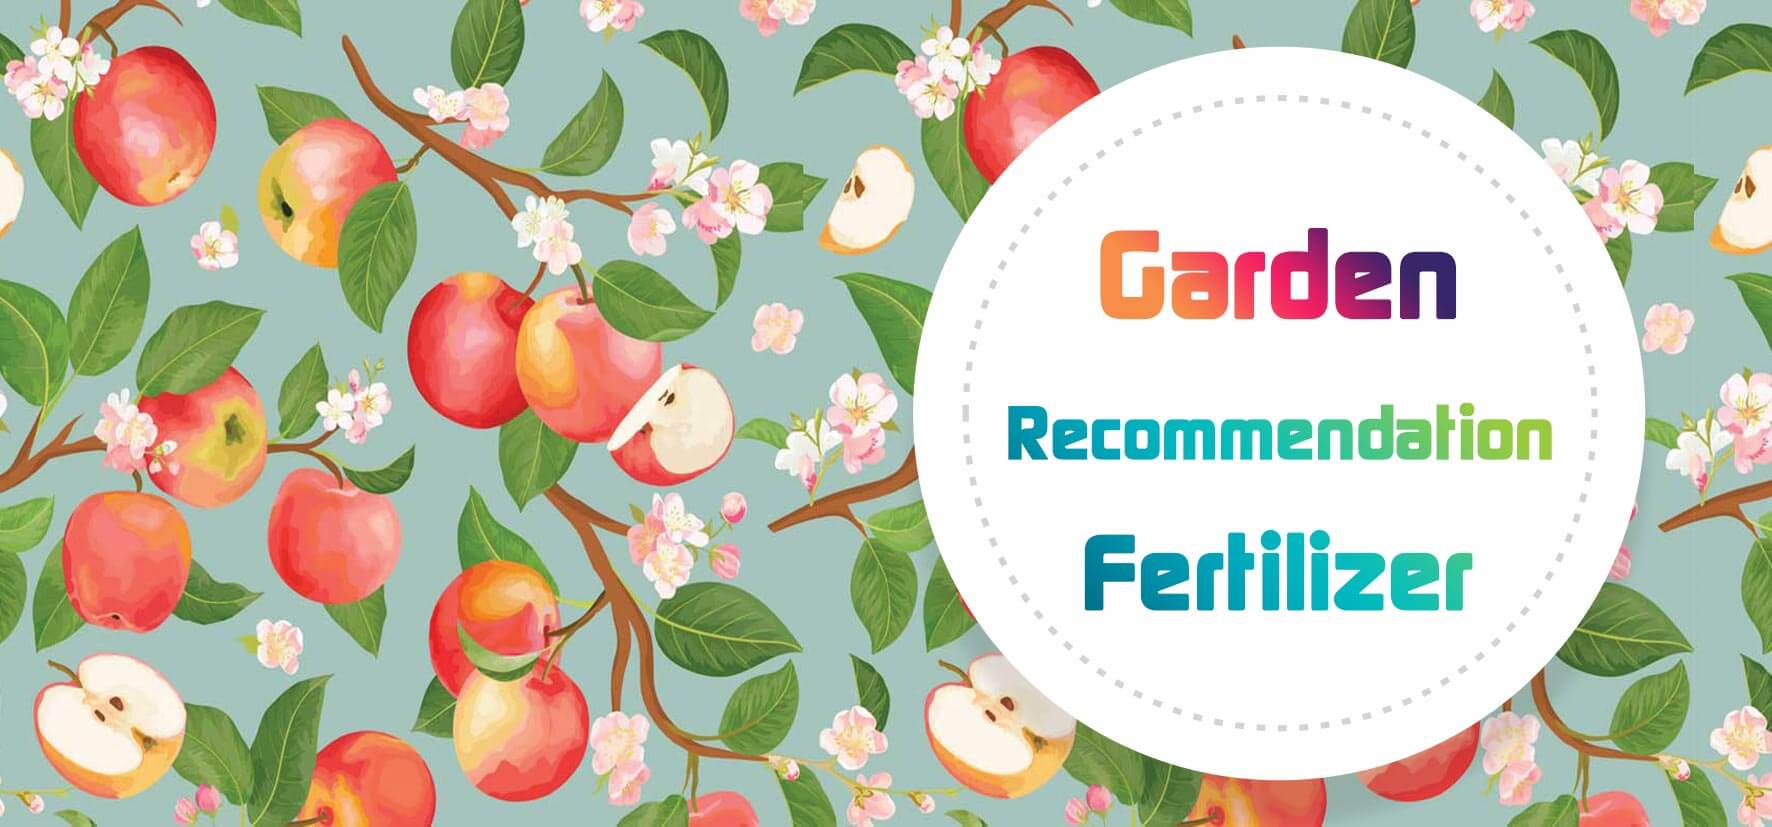 Garden fertilizer recommendation